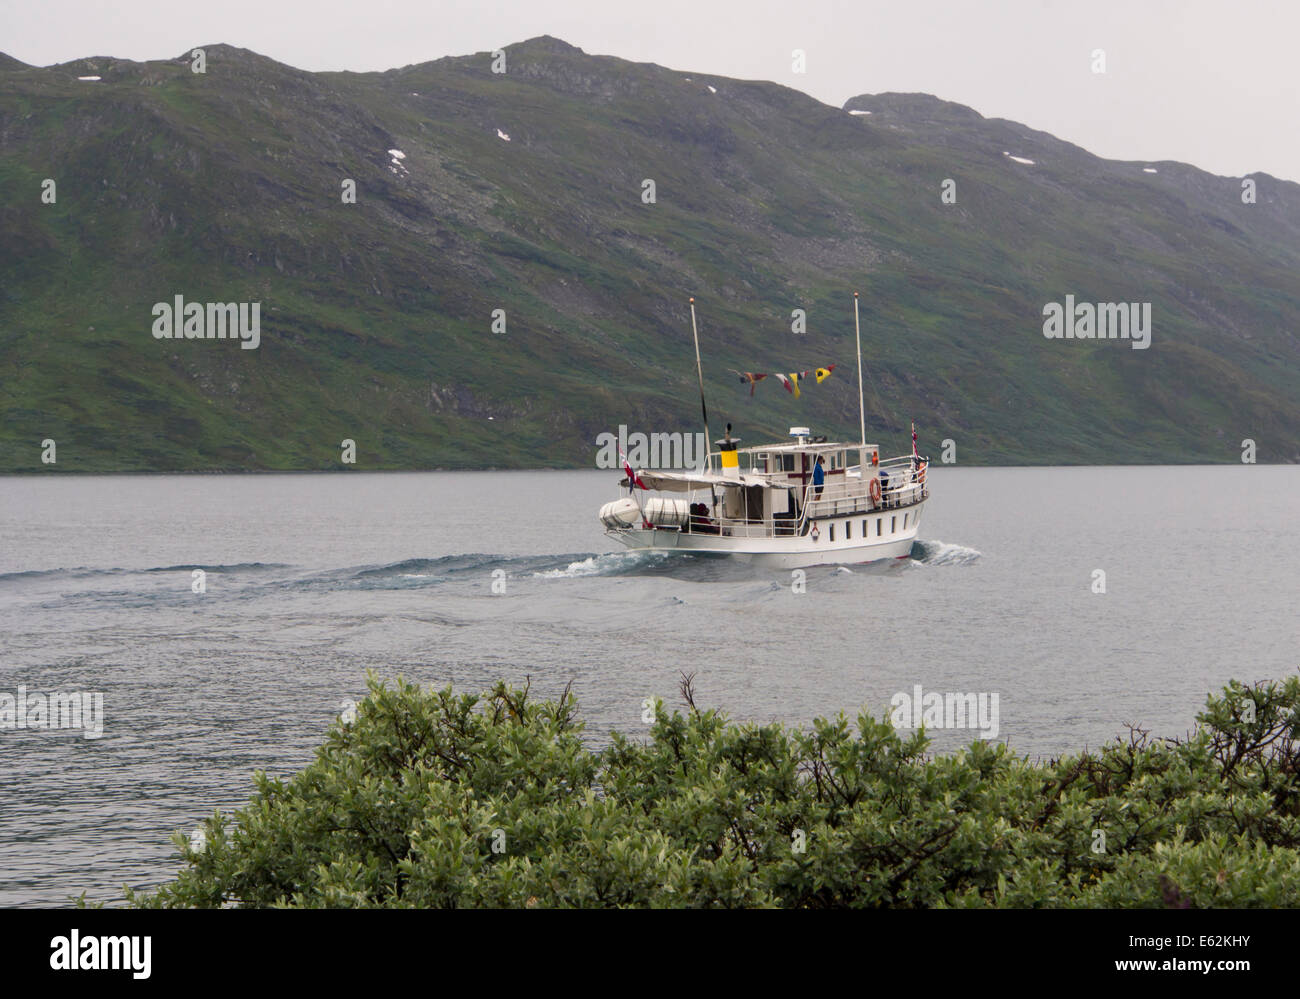 Le bateau à passagers Bitihorn convoyant les randonneurs sur le lac Bygdin dans les montagnes de Jotunheimen Norvège depuis 1912 Banque D'Images